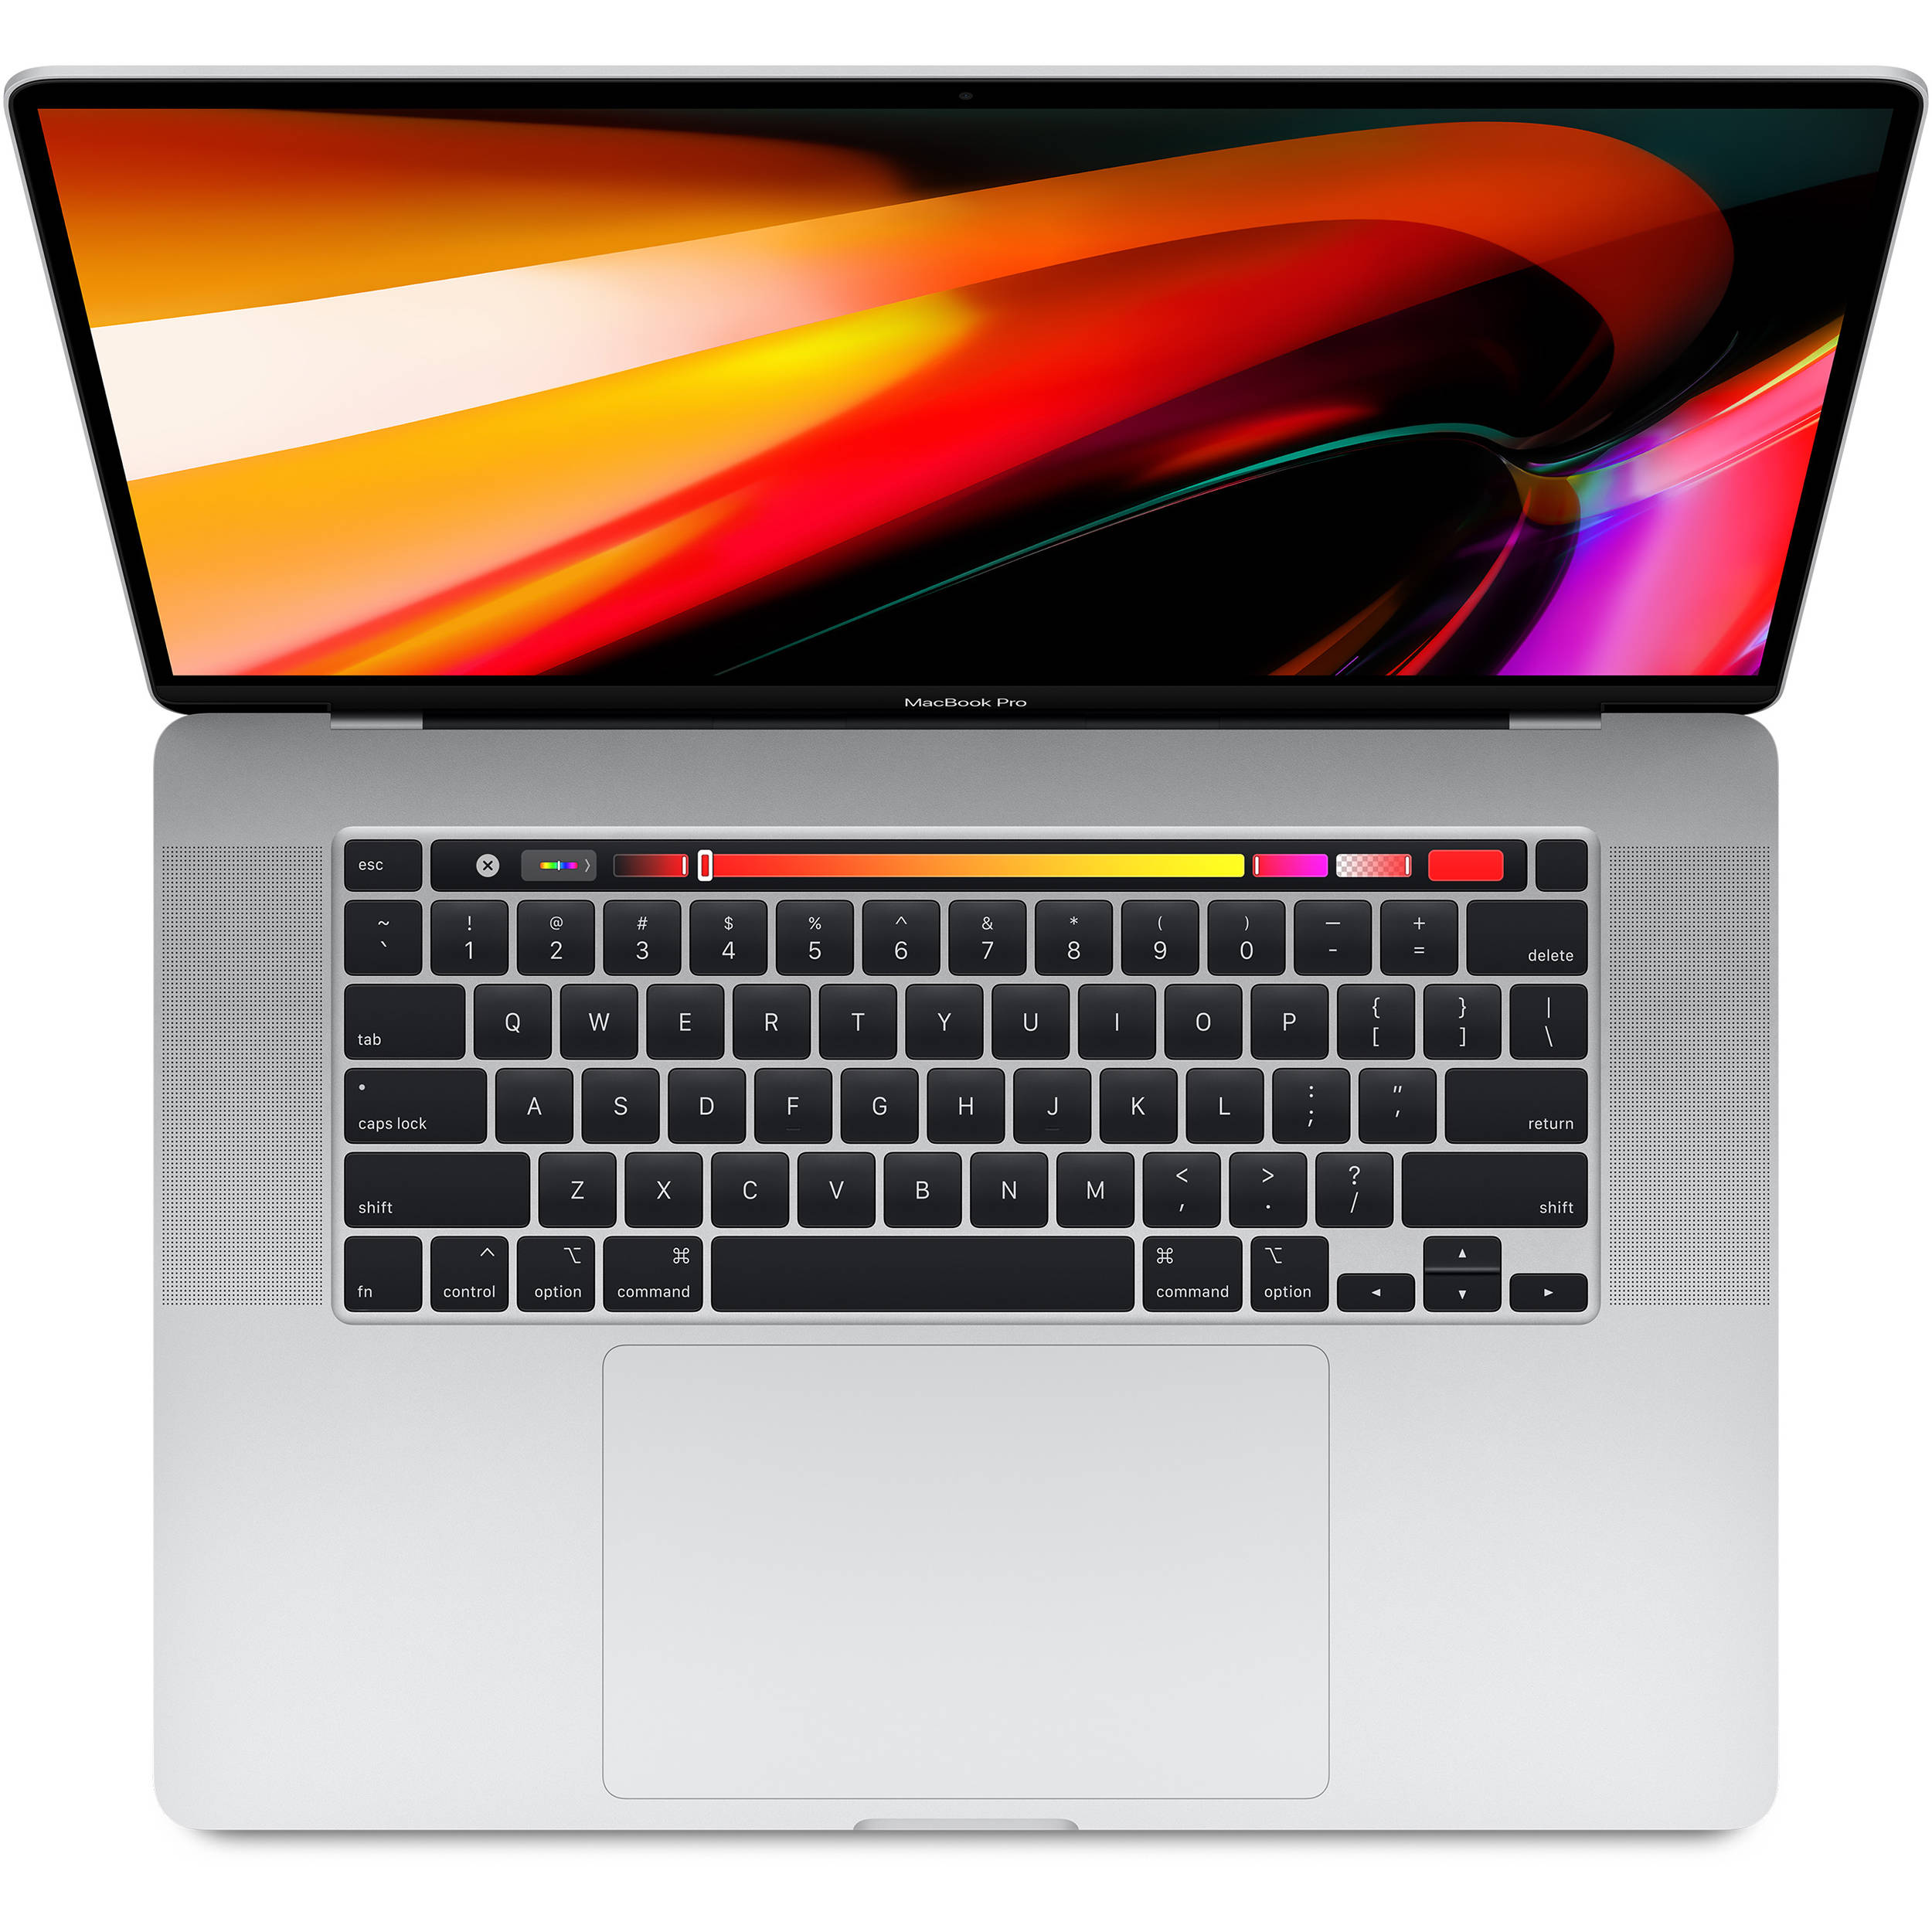 فروش نقدی و اقساطی لپ تاپ 16 اینچی اپل مدل MacBook Pro MVVL2 2019 همراه با تاچ بار